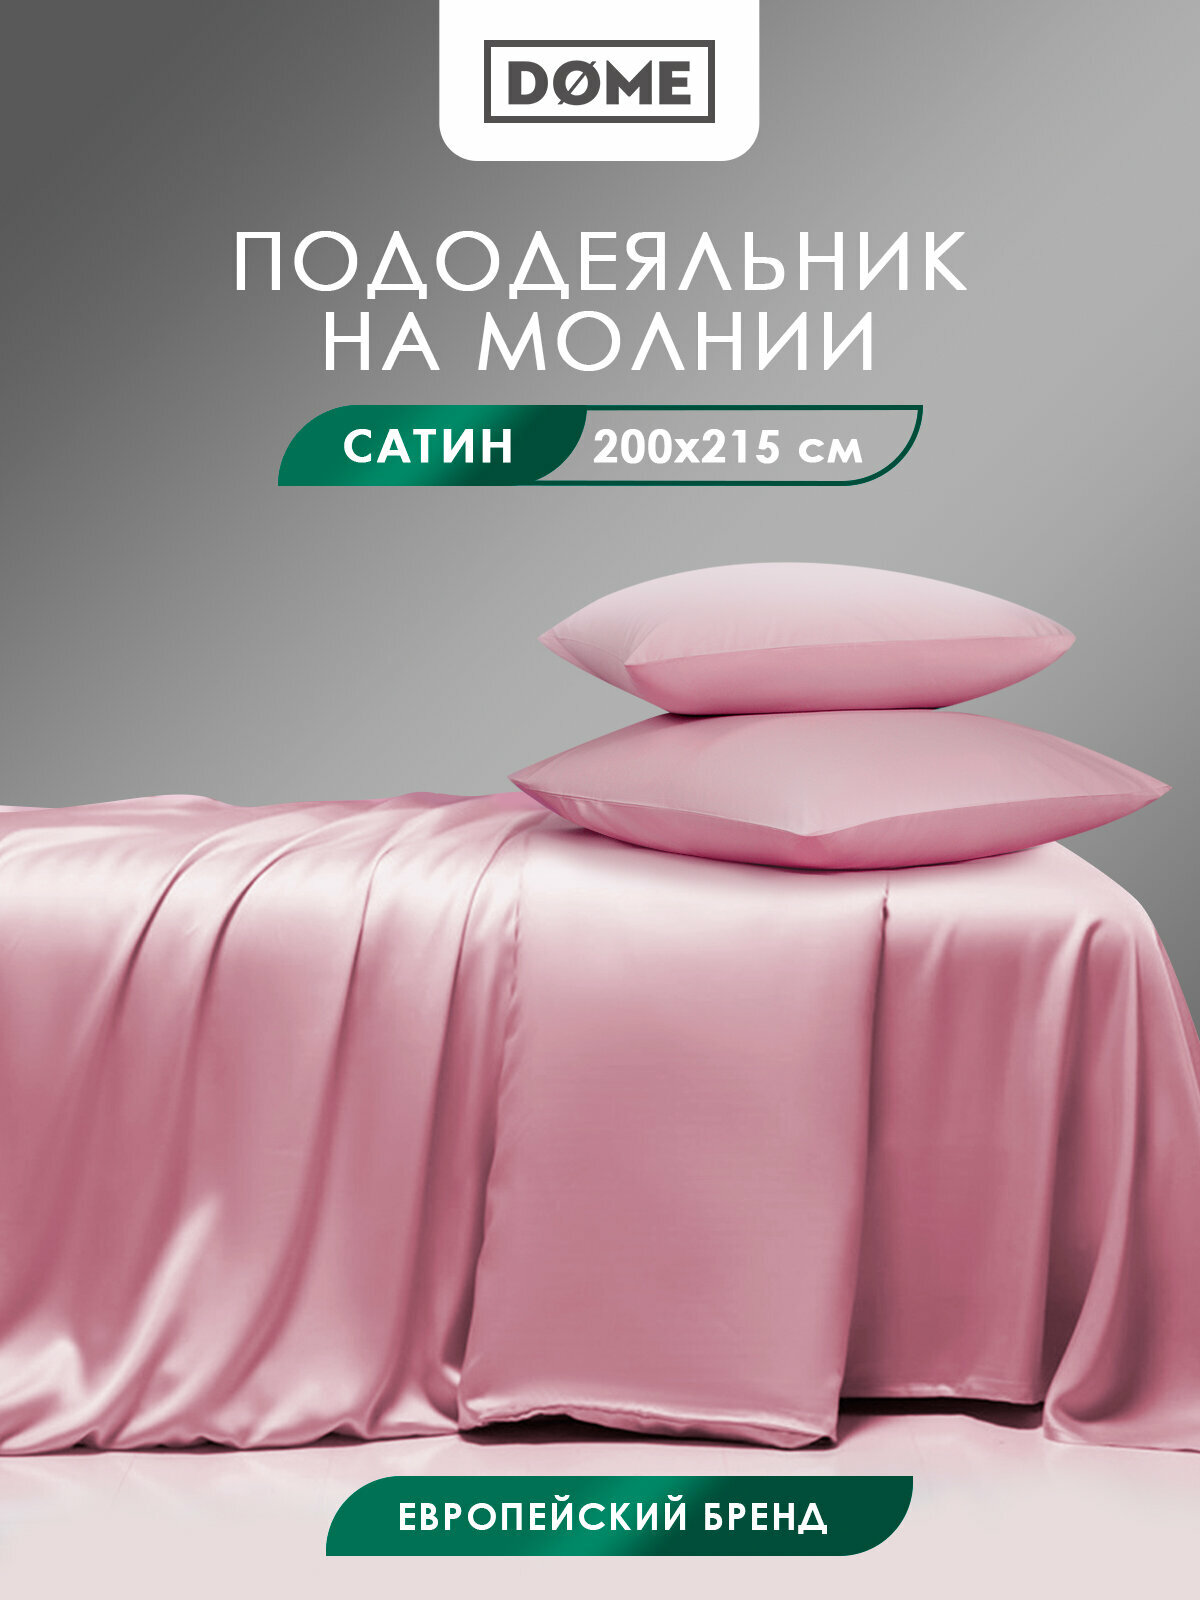 Dome Пододеяльник Лорено цвет: розовый (200х215 см)